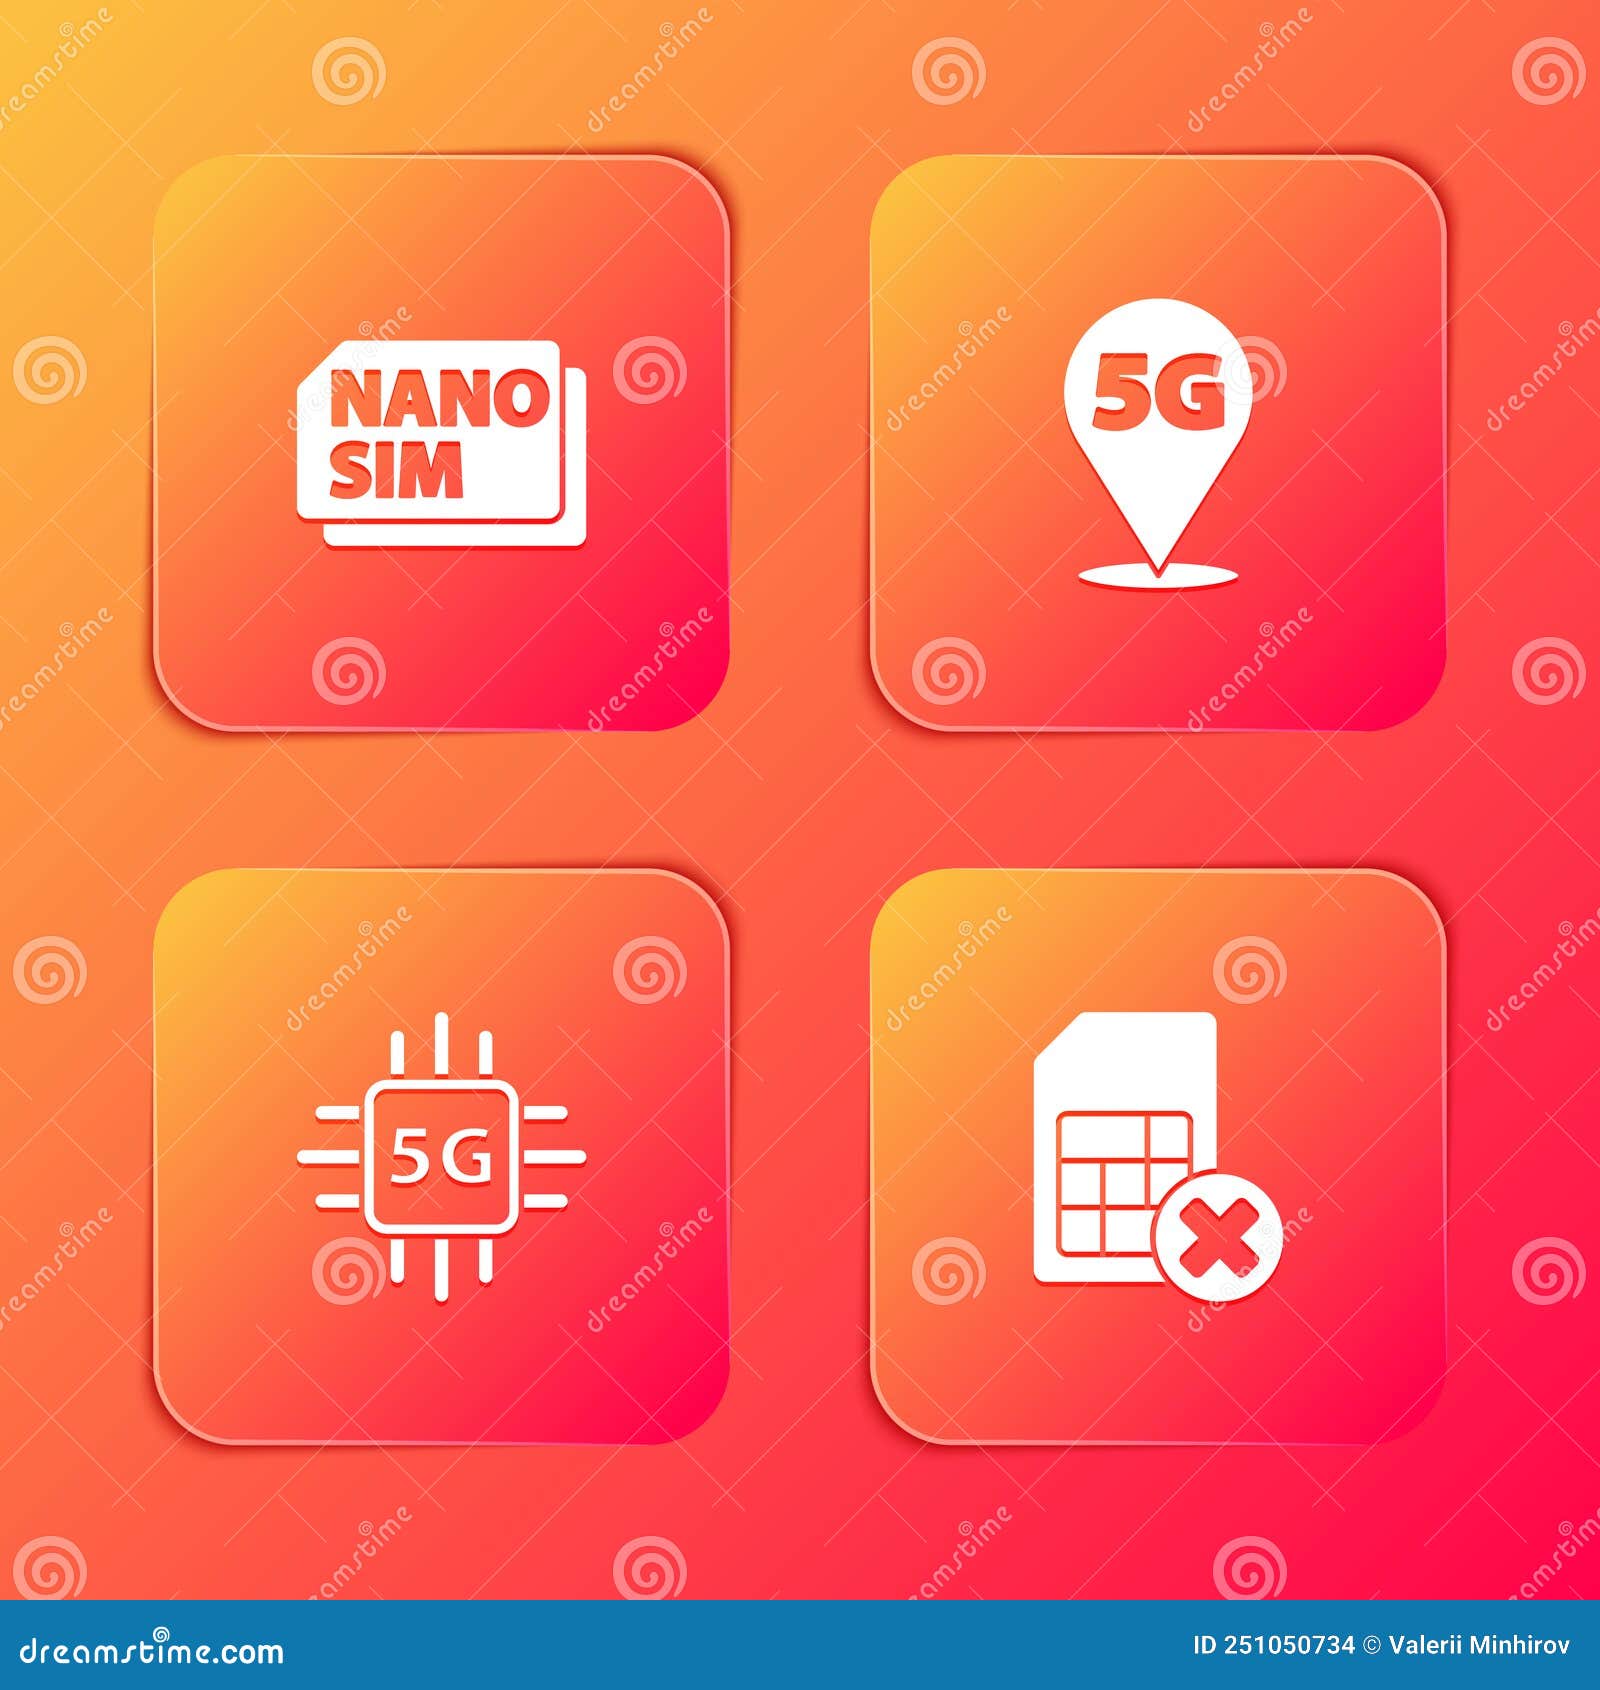 Small nano sim card and tray Royalty Free Vector Image